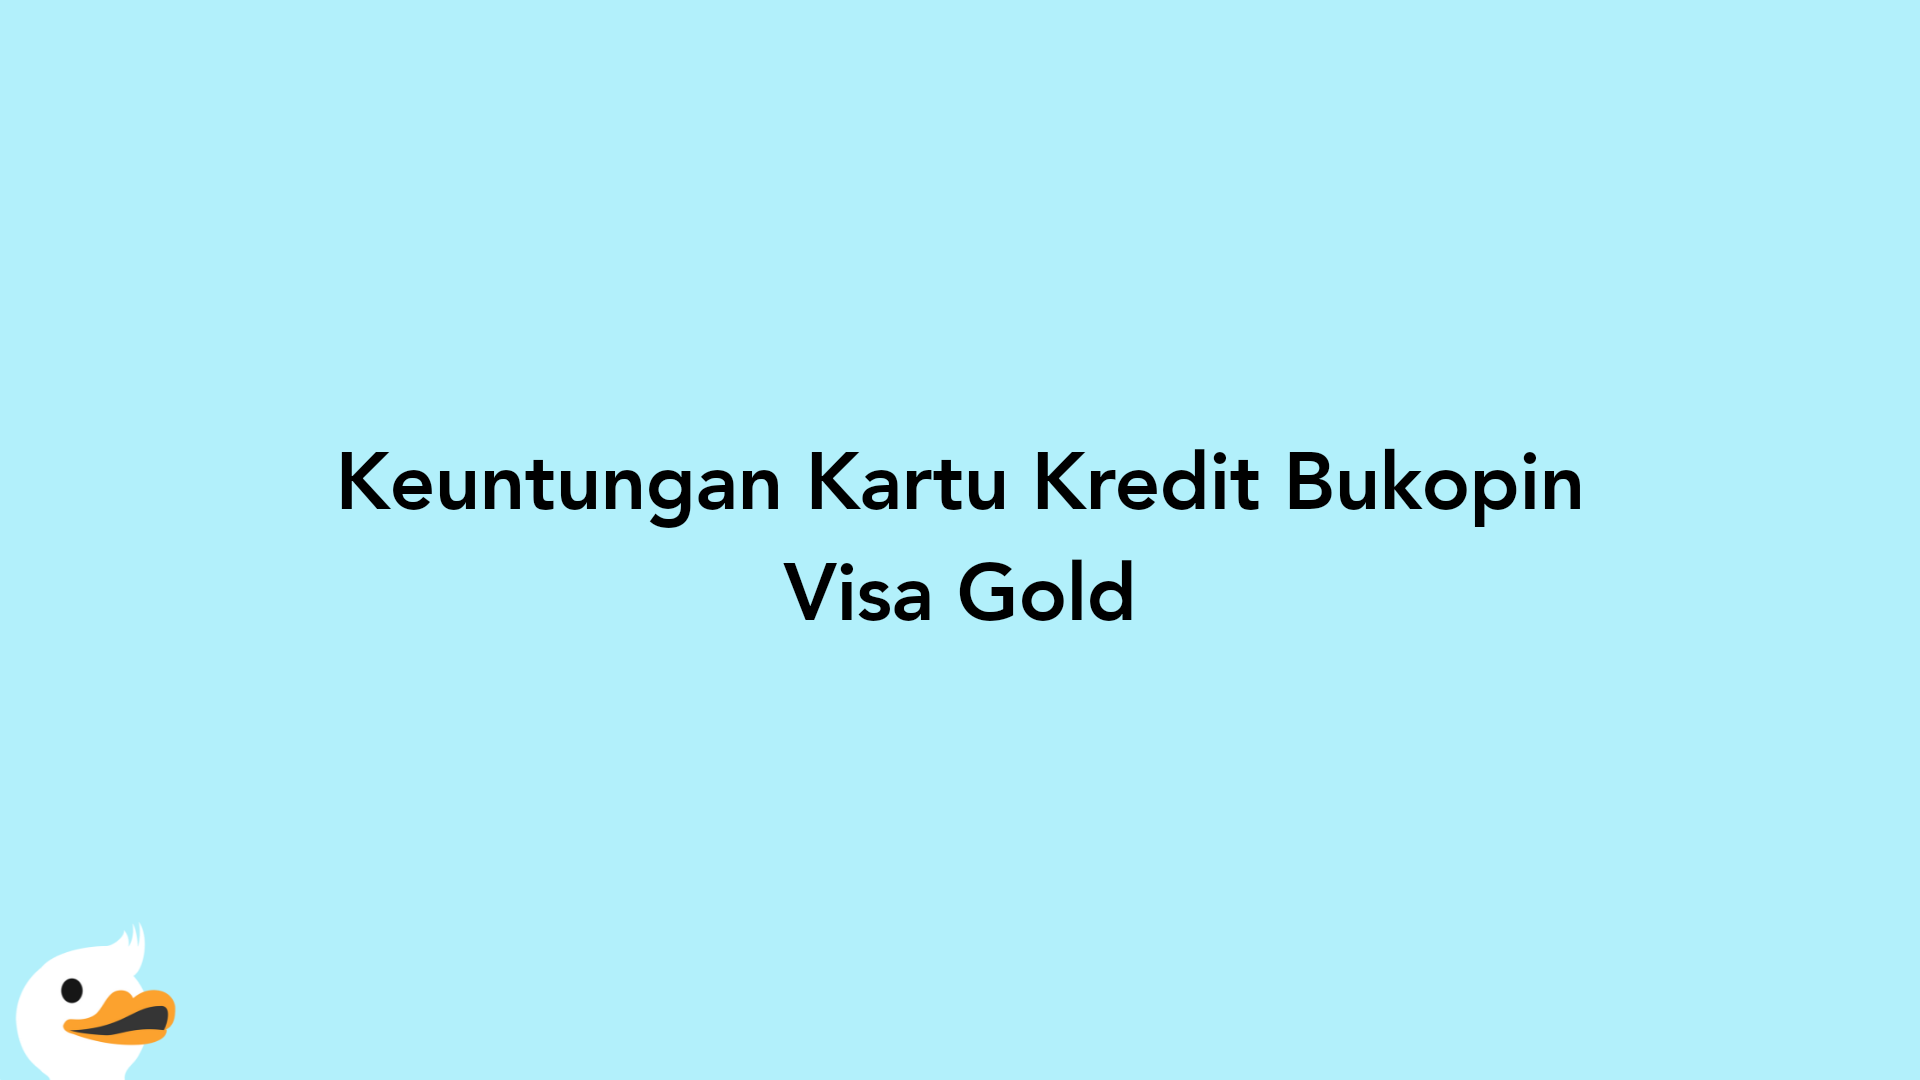 Keuntungan Kartu Kredit Bukopin Visa Gold